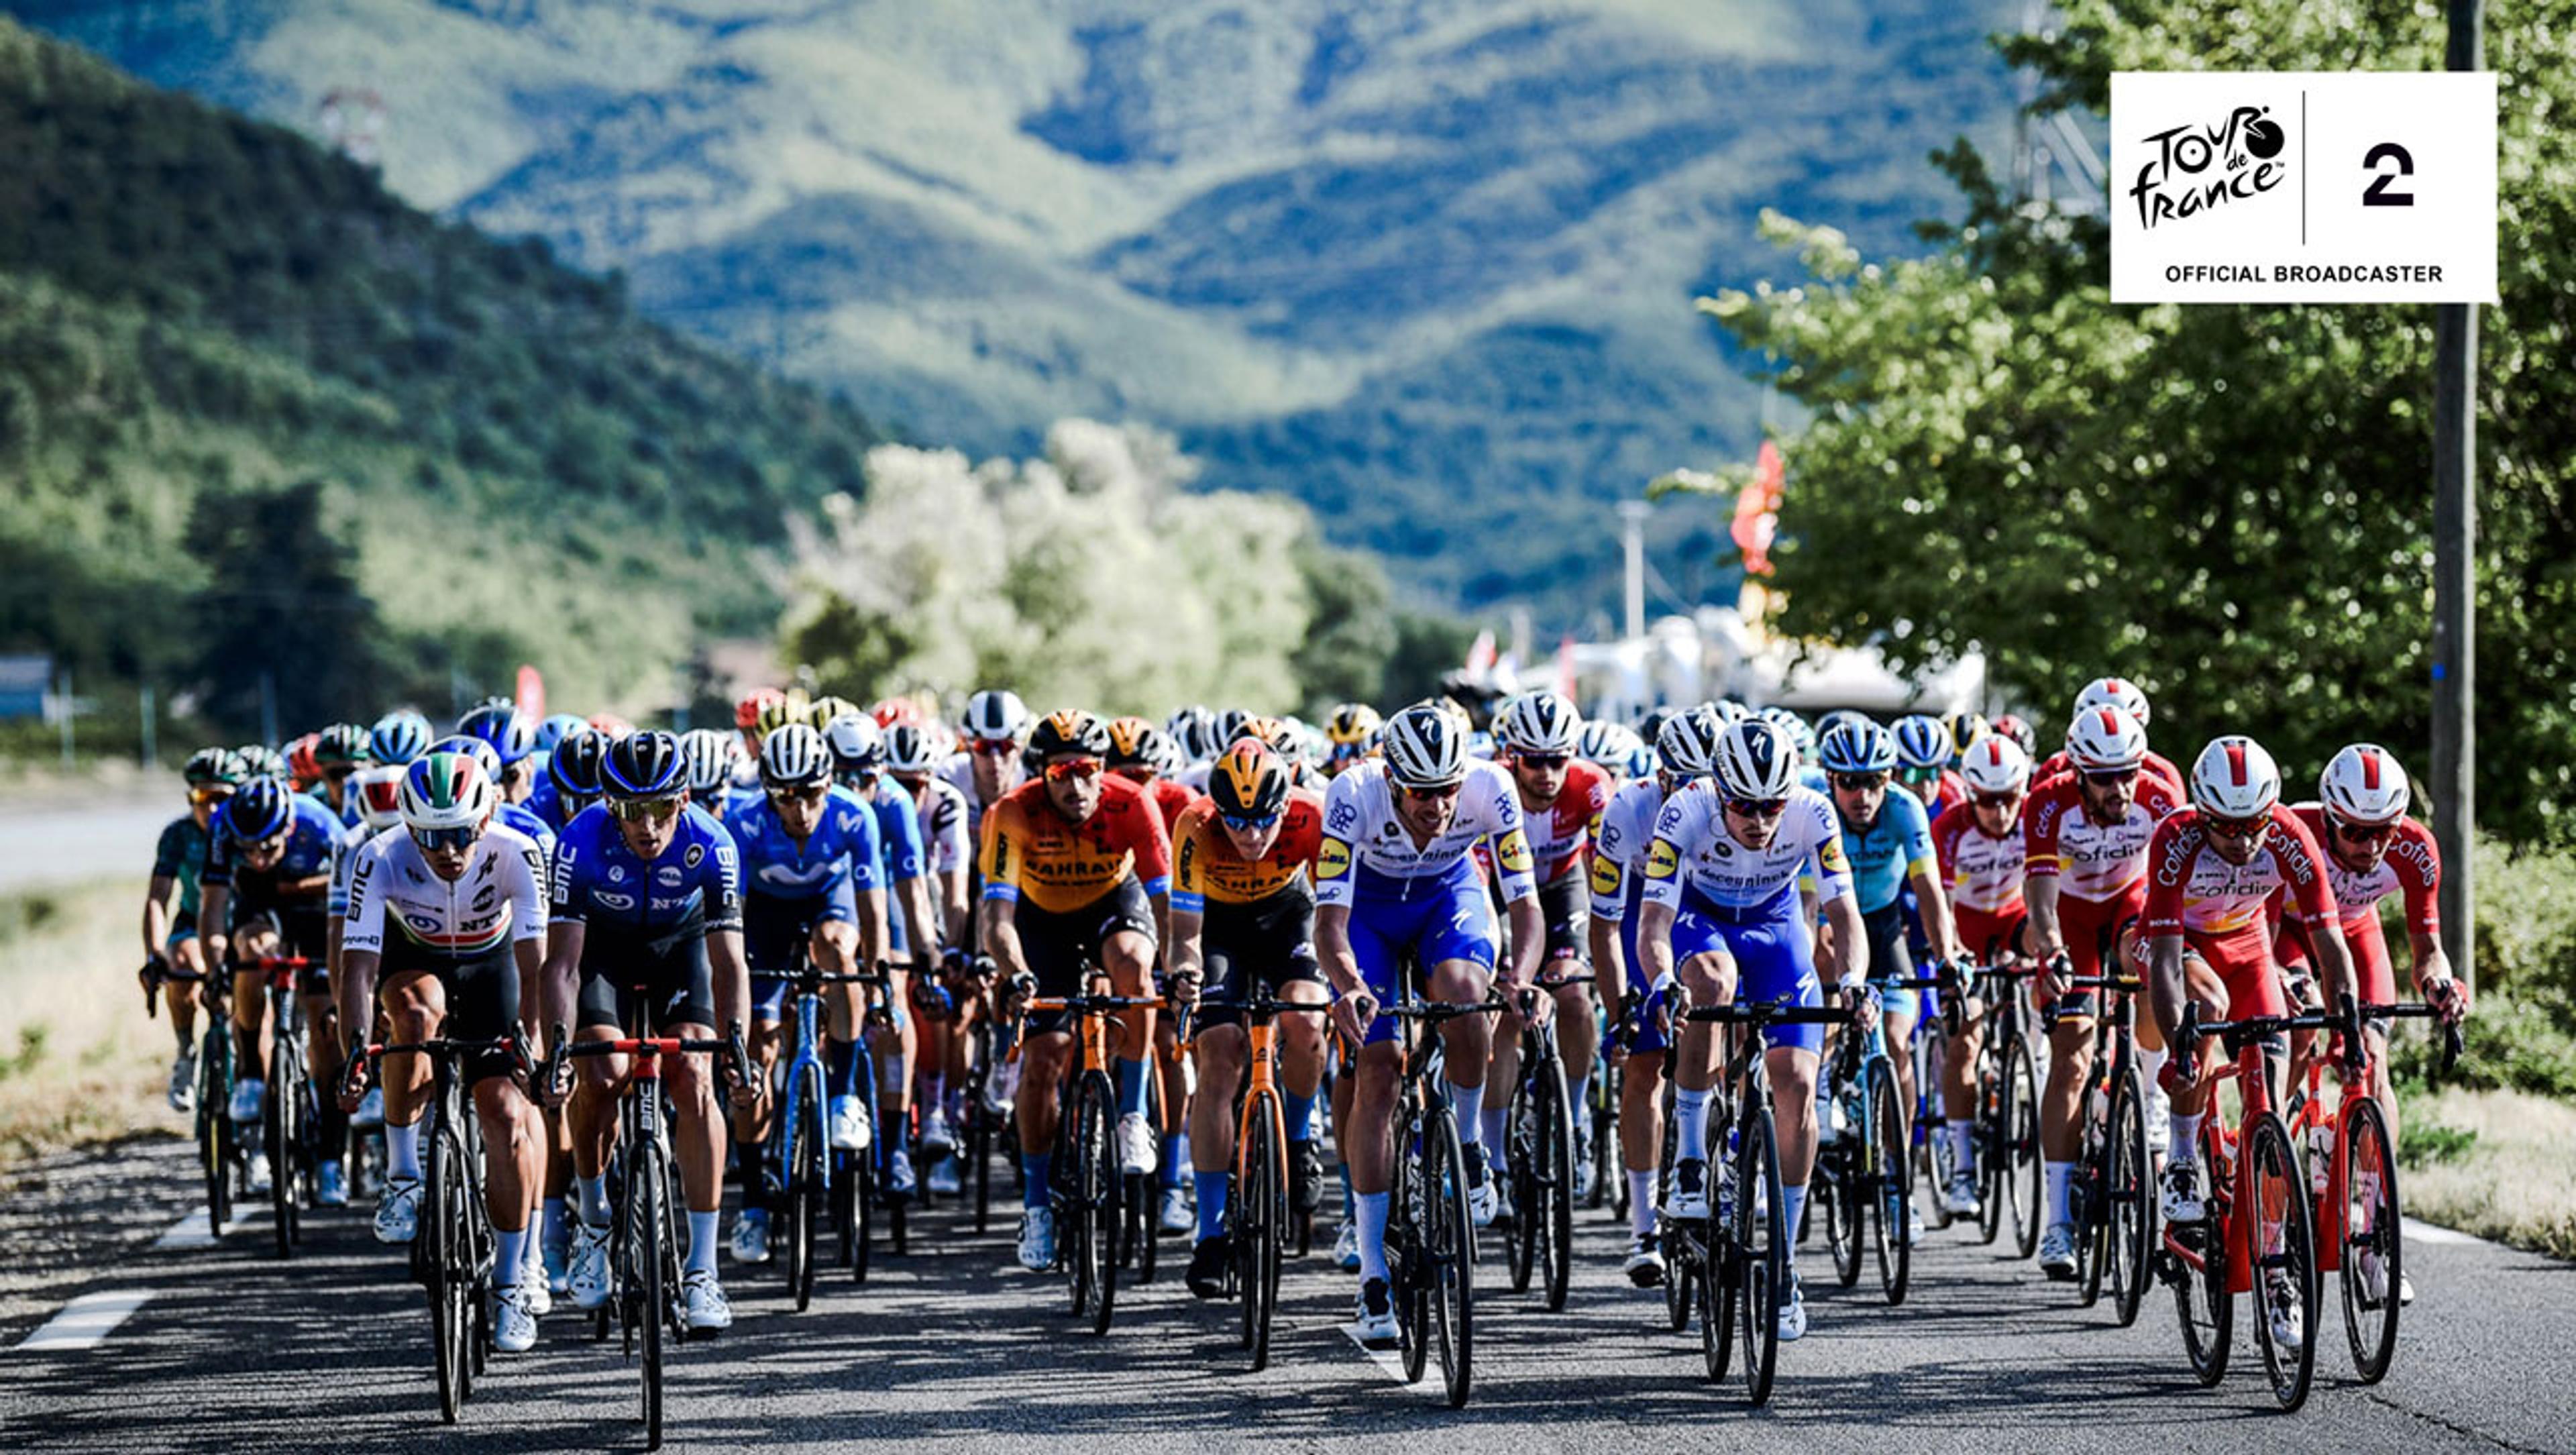 Sykkelryttere i frodige naturomgivelser under Tour de France 